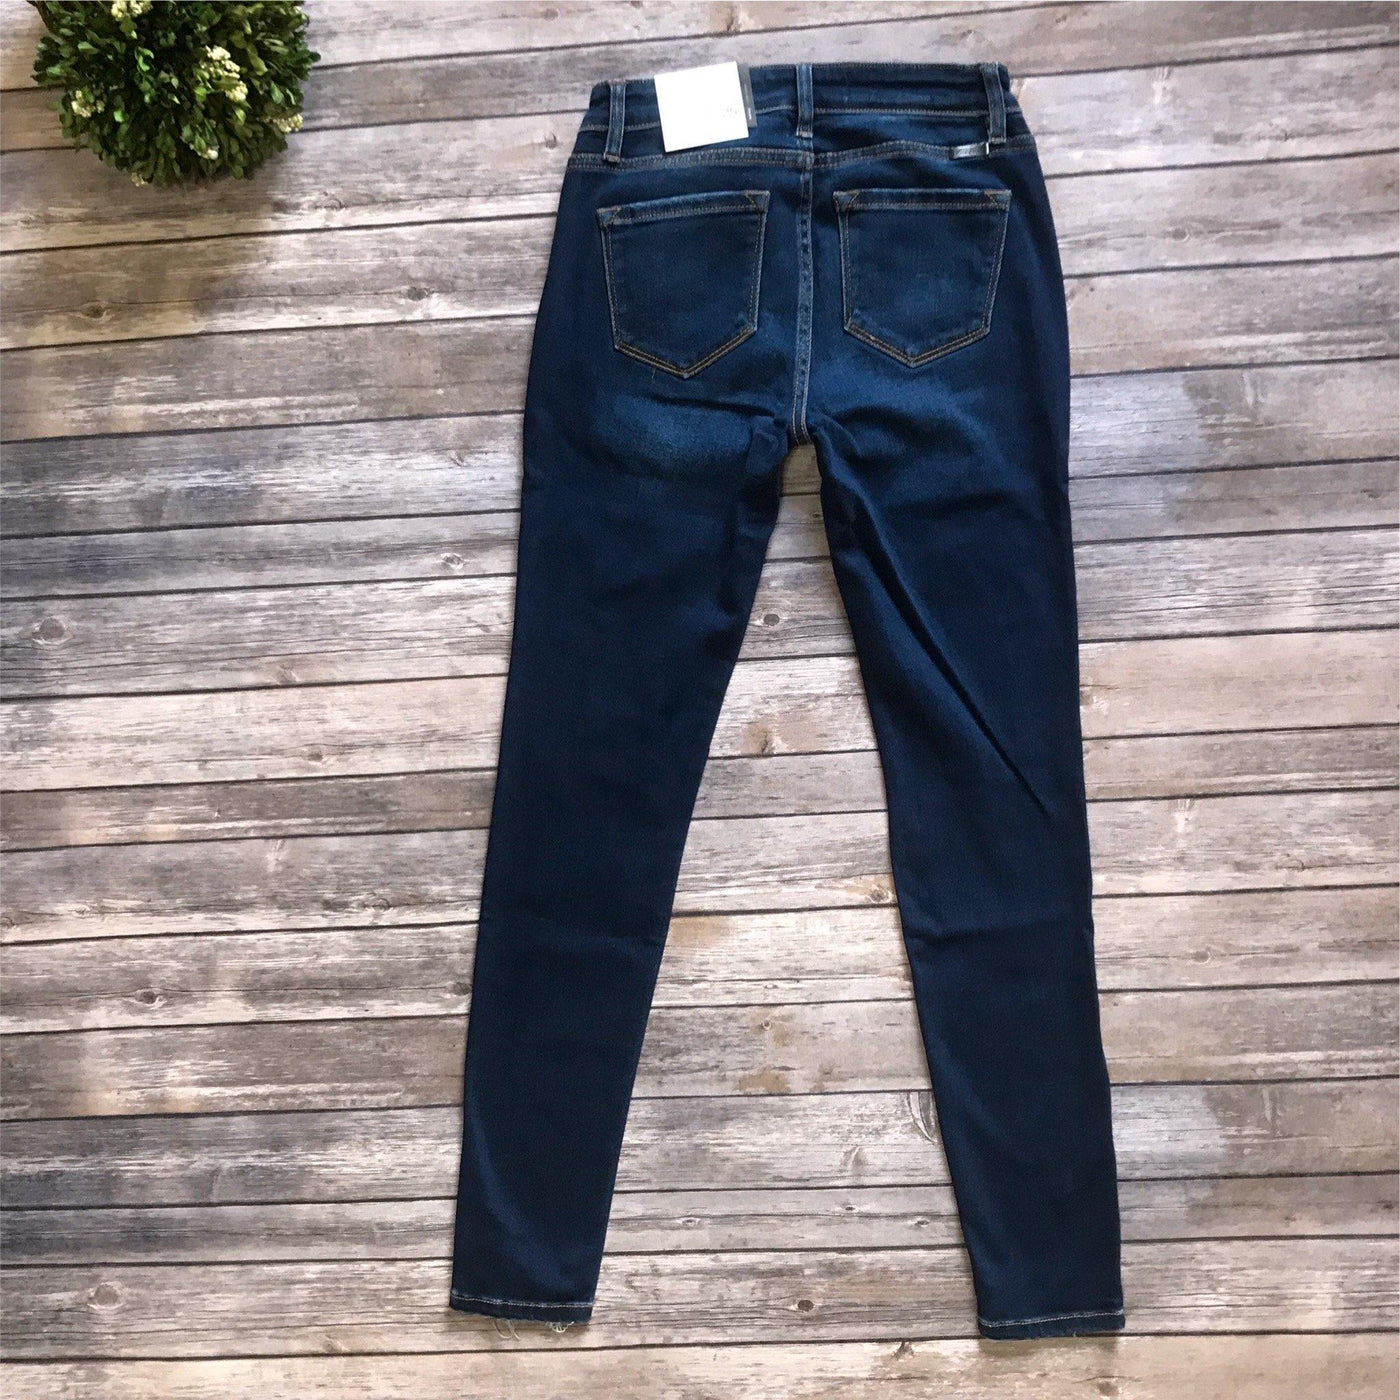 Kancan KC5055D Dark Wash Mid Rise Distressed Skinny Jeans - jeans - dalia + jade 